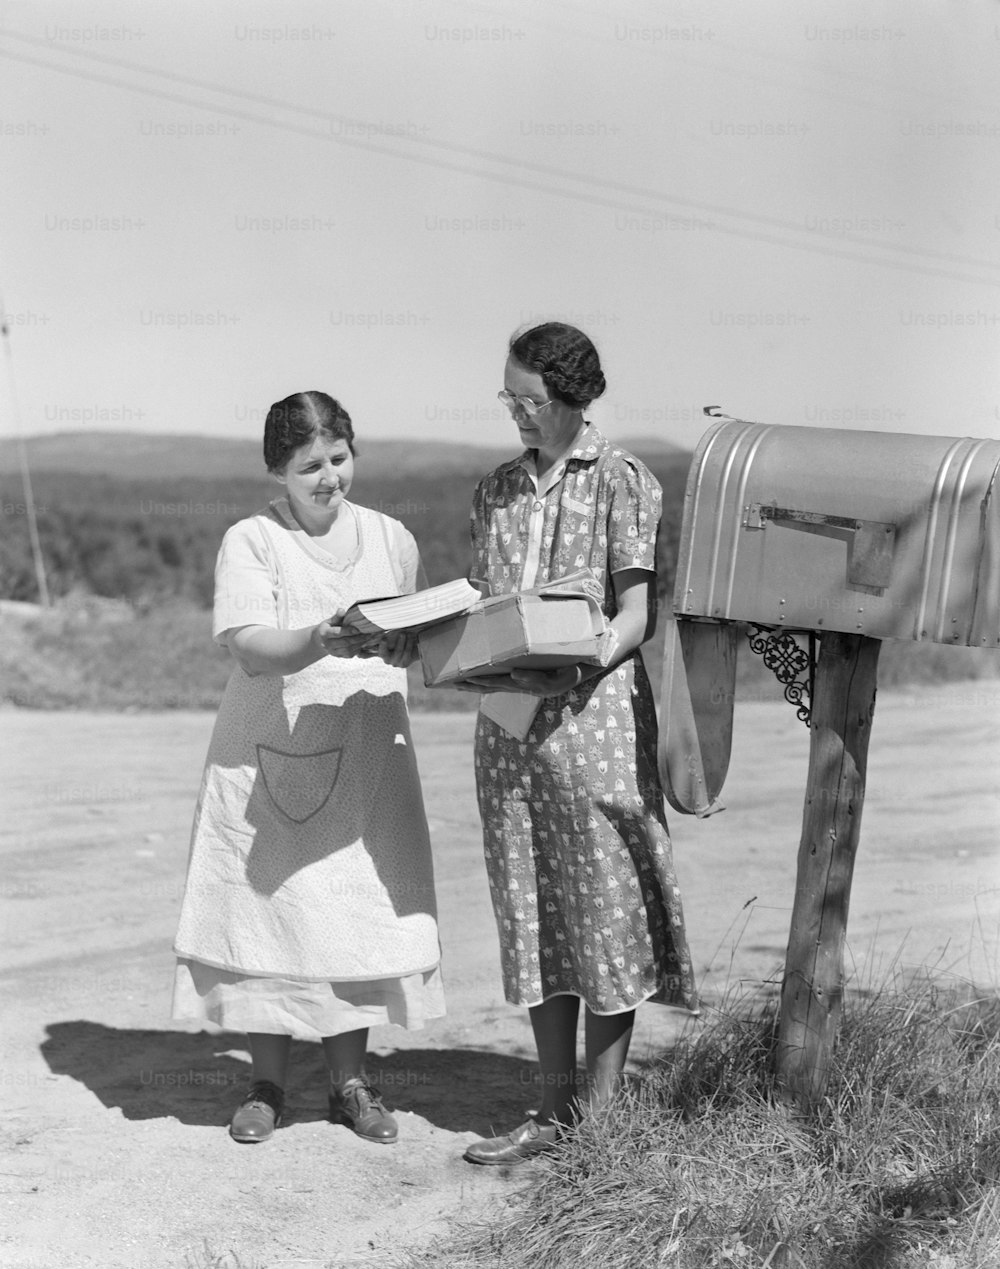 ETATS-UNIS - Vers les années 1940 : Deux femmes récupèrent le courrier dans la boîte aux lettres du pays.